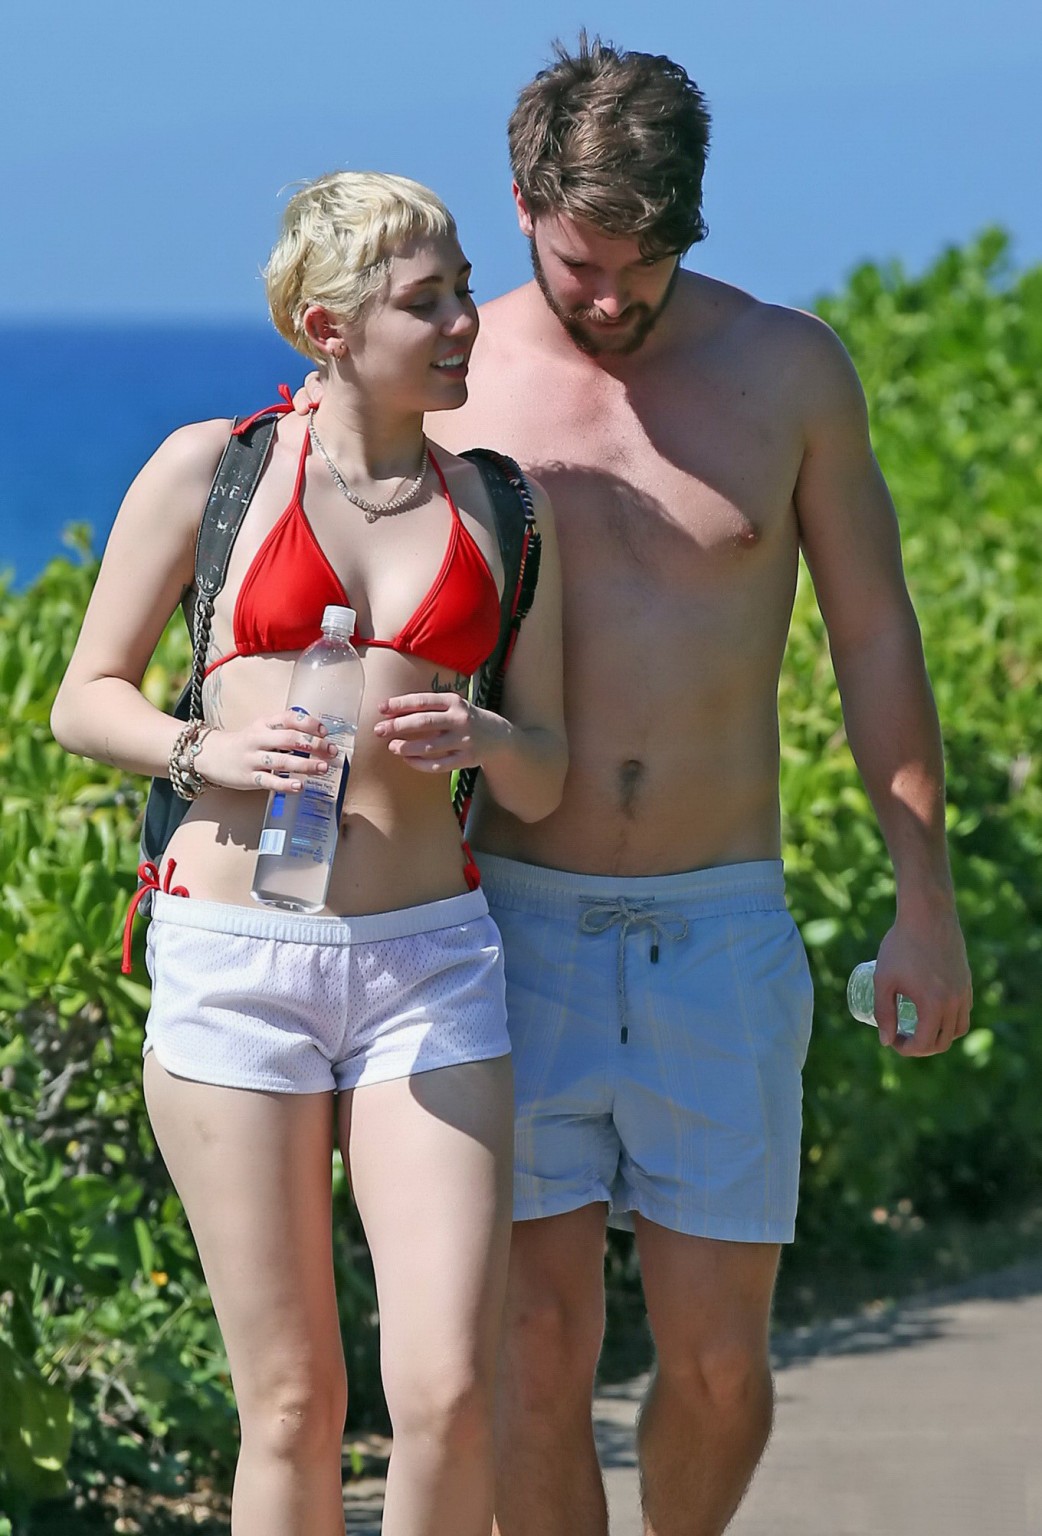 Miley Cyrus Wearing Tiny Red Bikini And Seethrough Shorts At A Vacation In Hawai